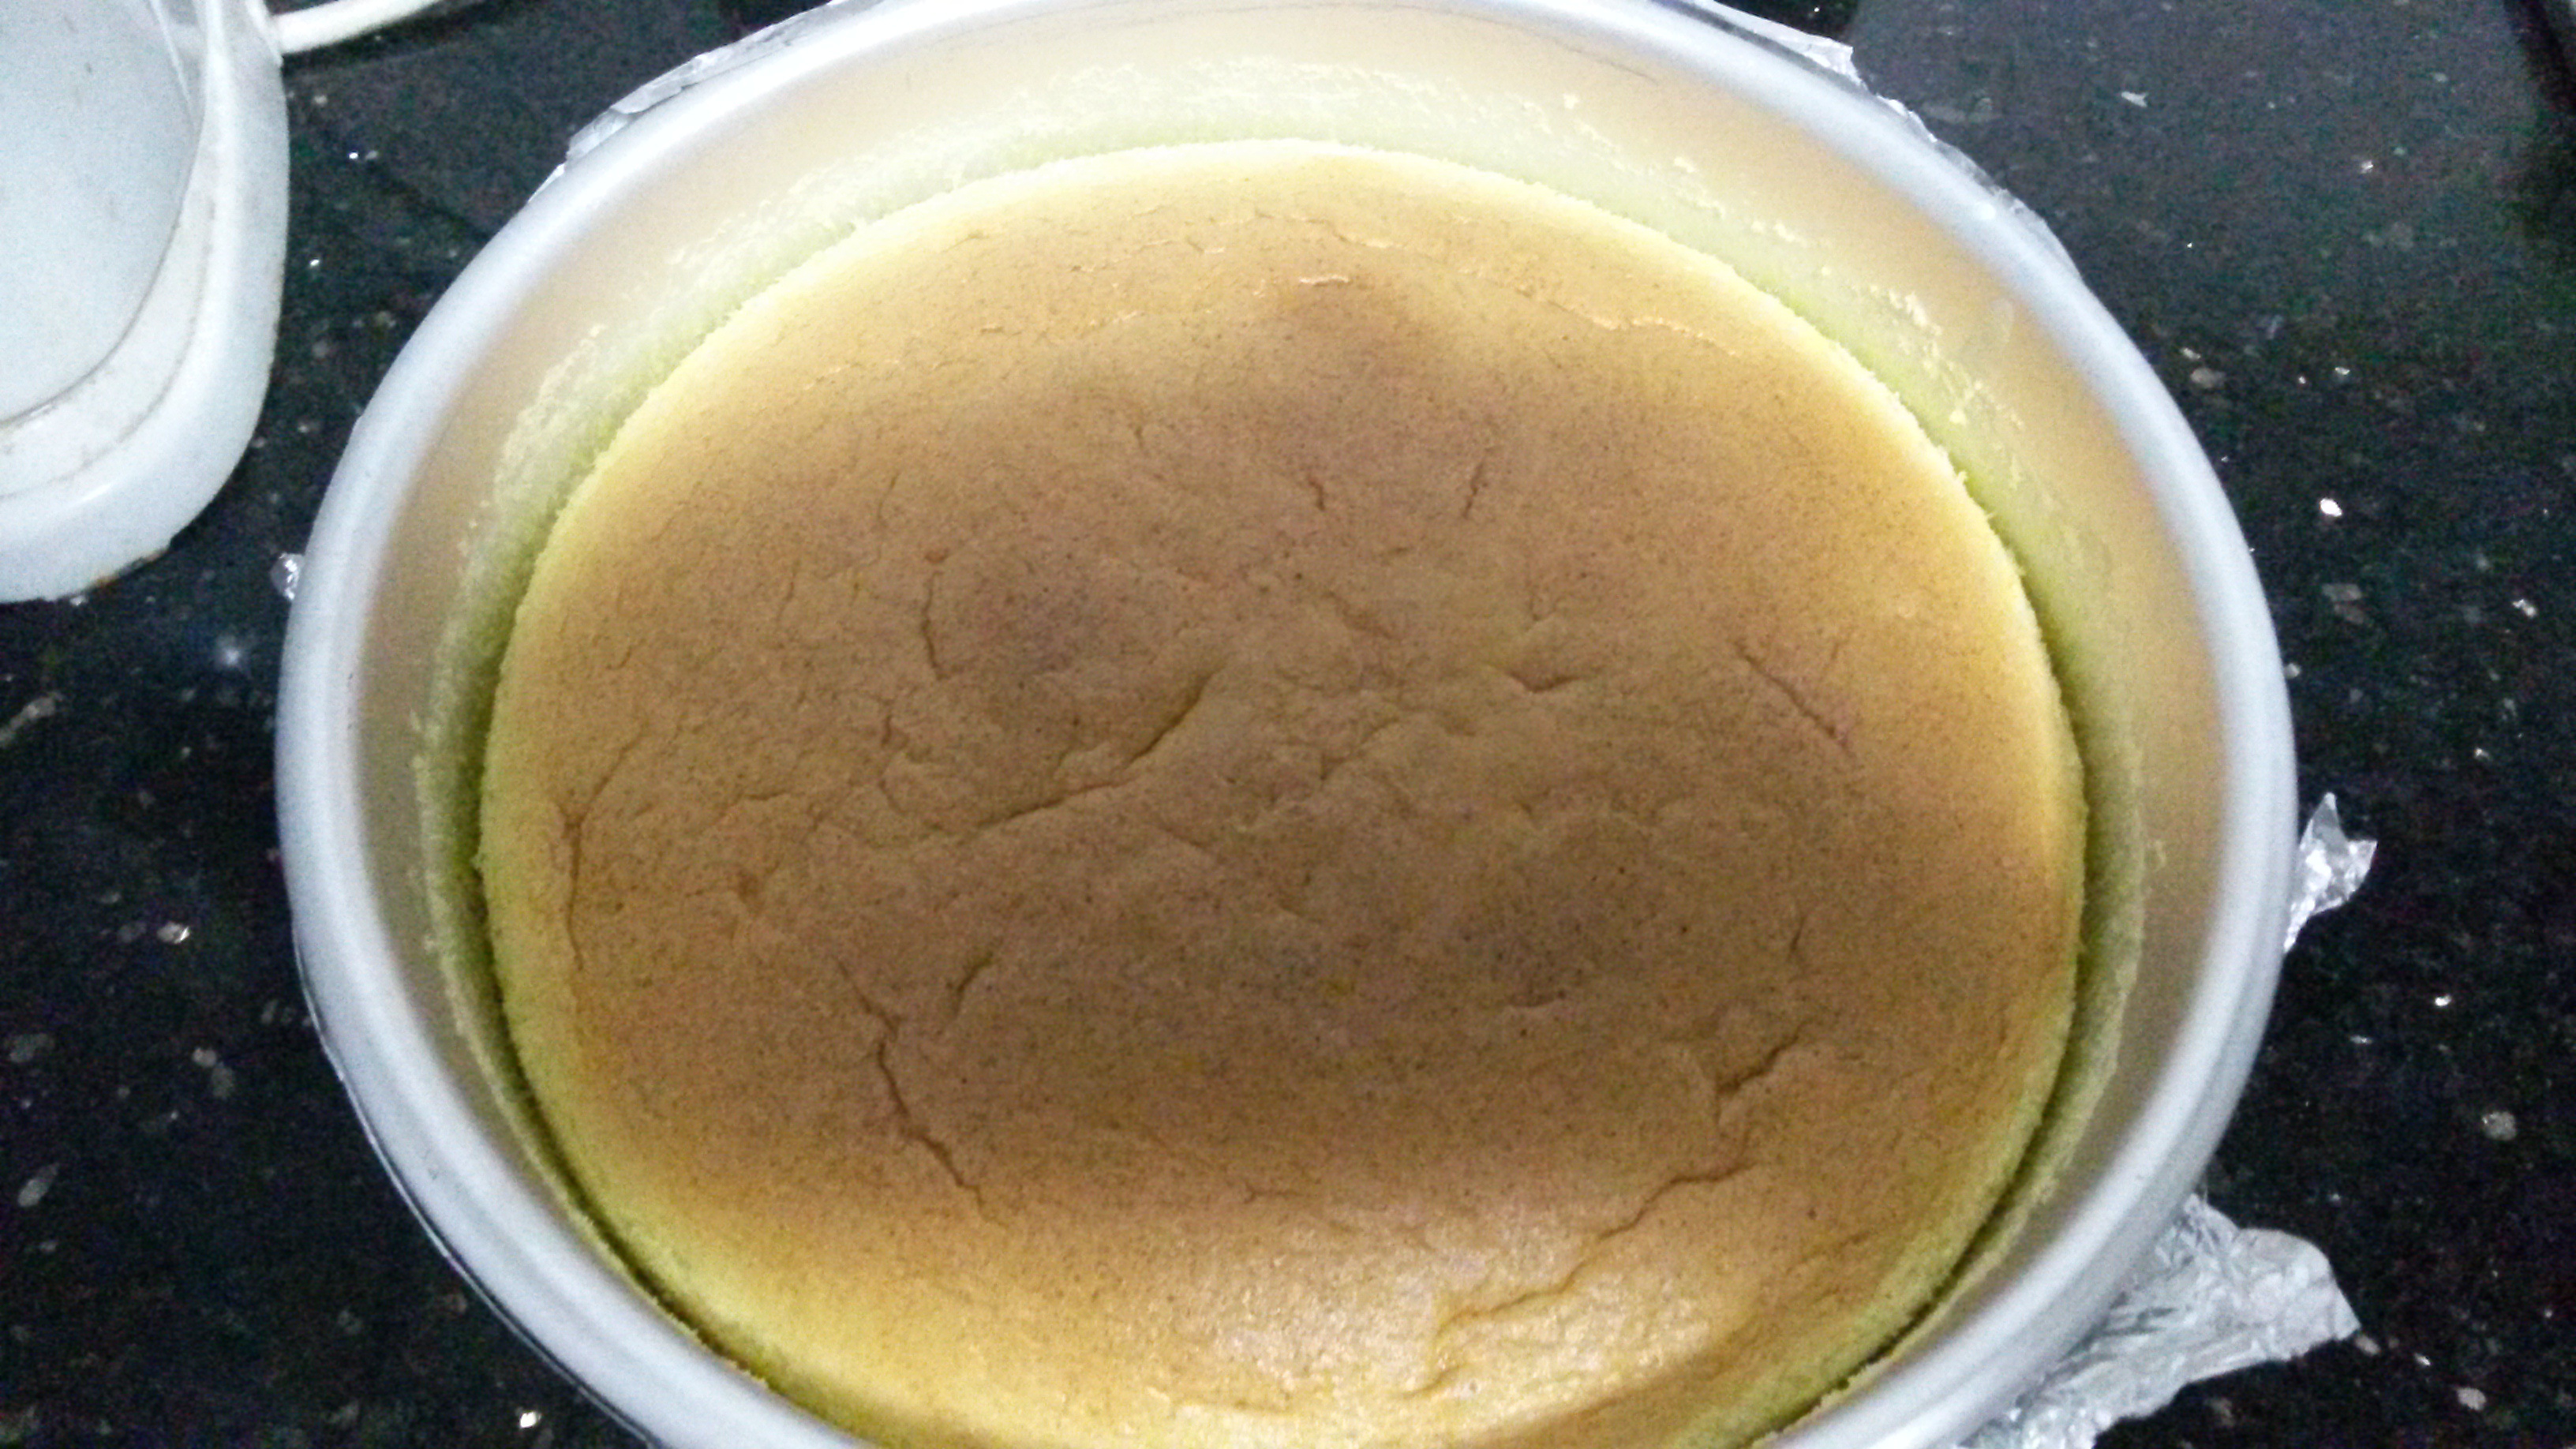 淡奶油蛋糕(消耗淡奶油秘方)—阿Q私家小厨